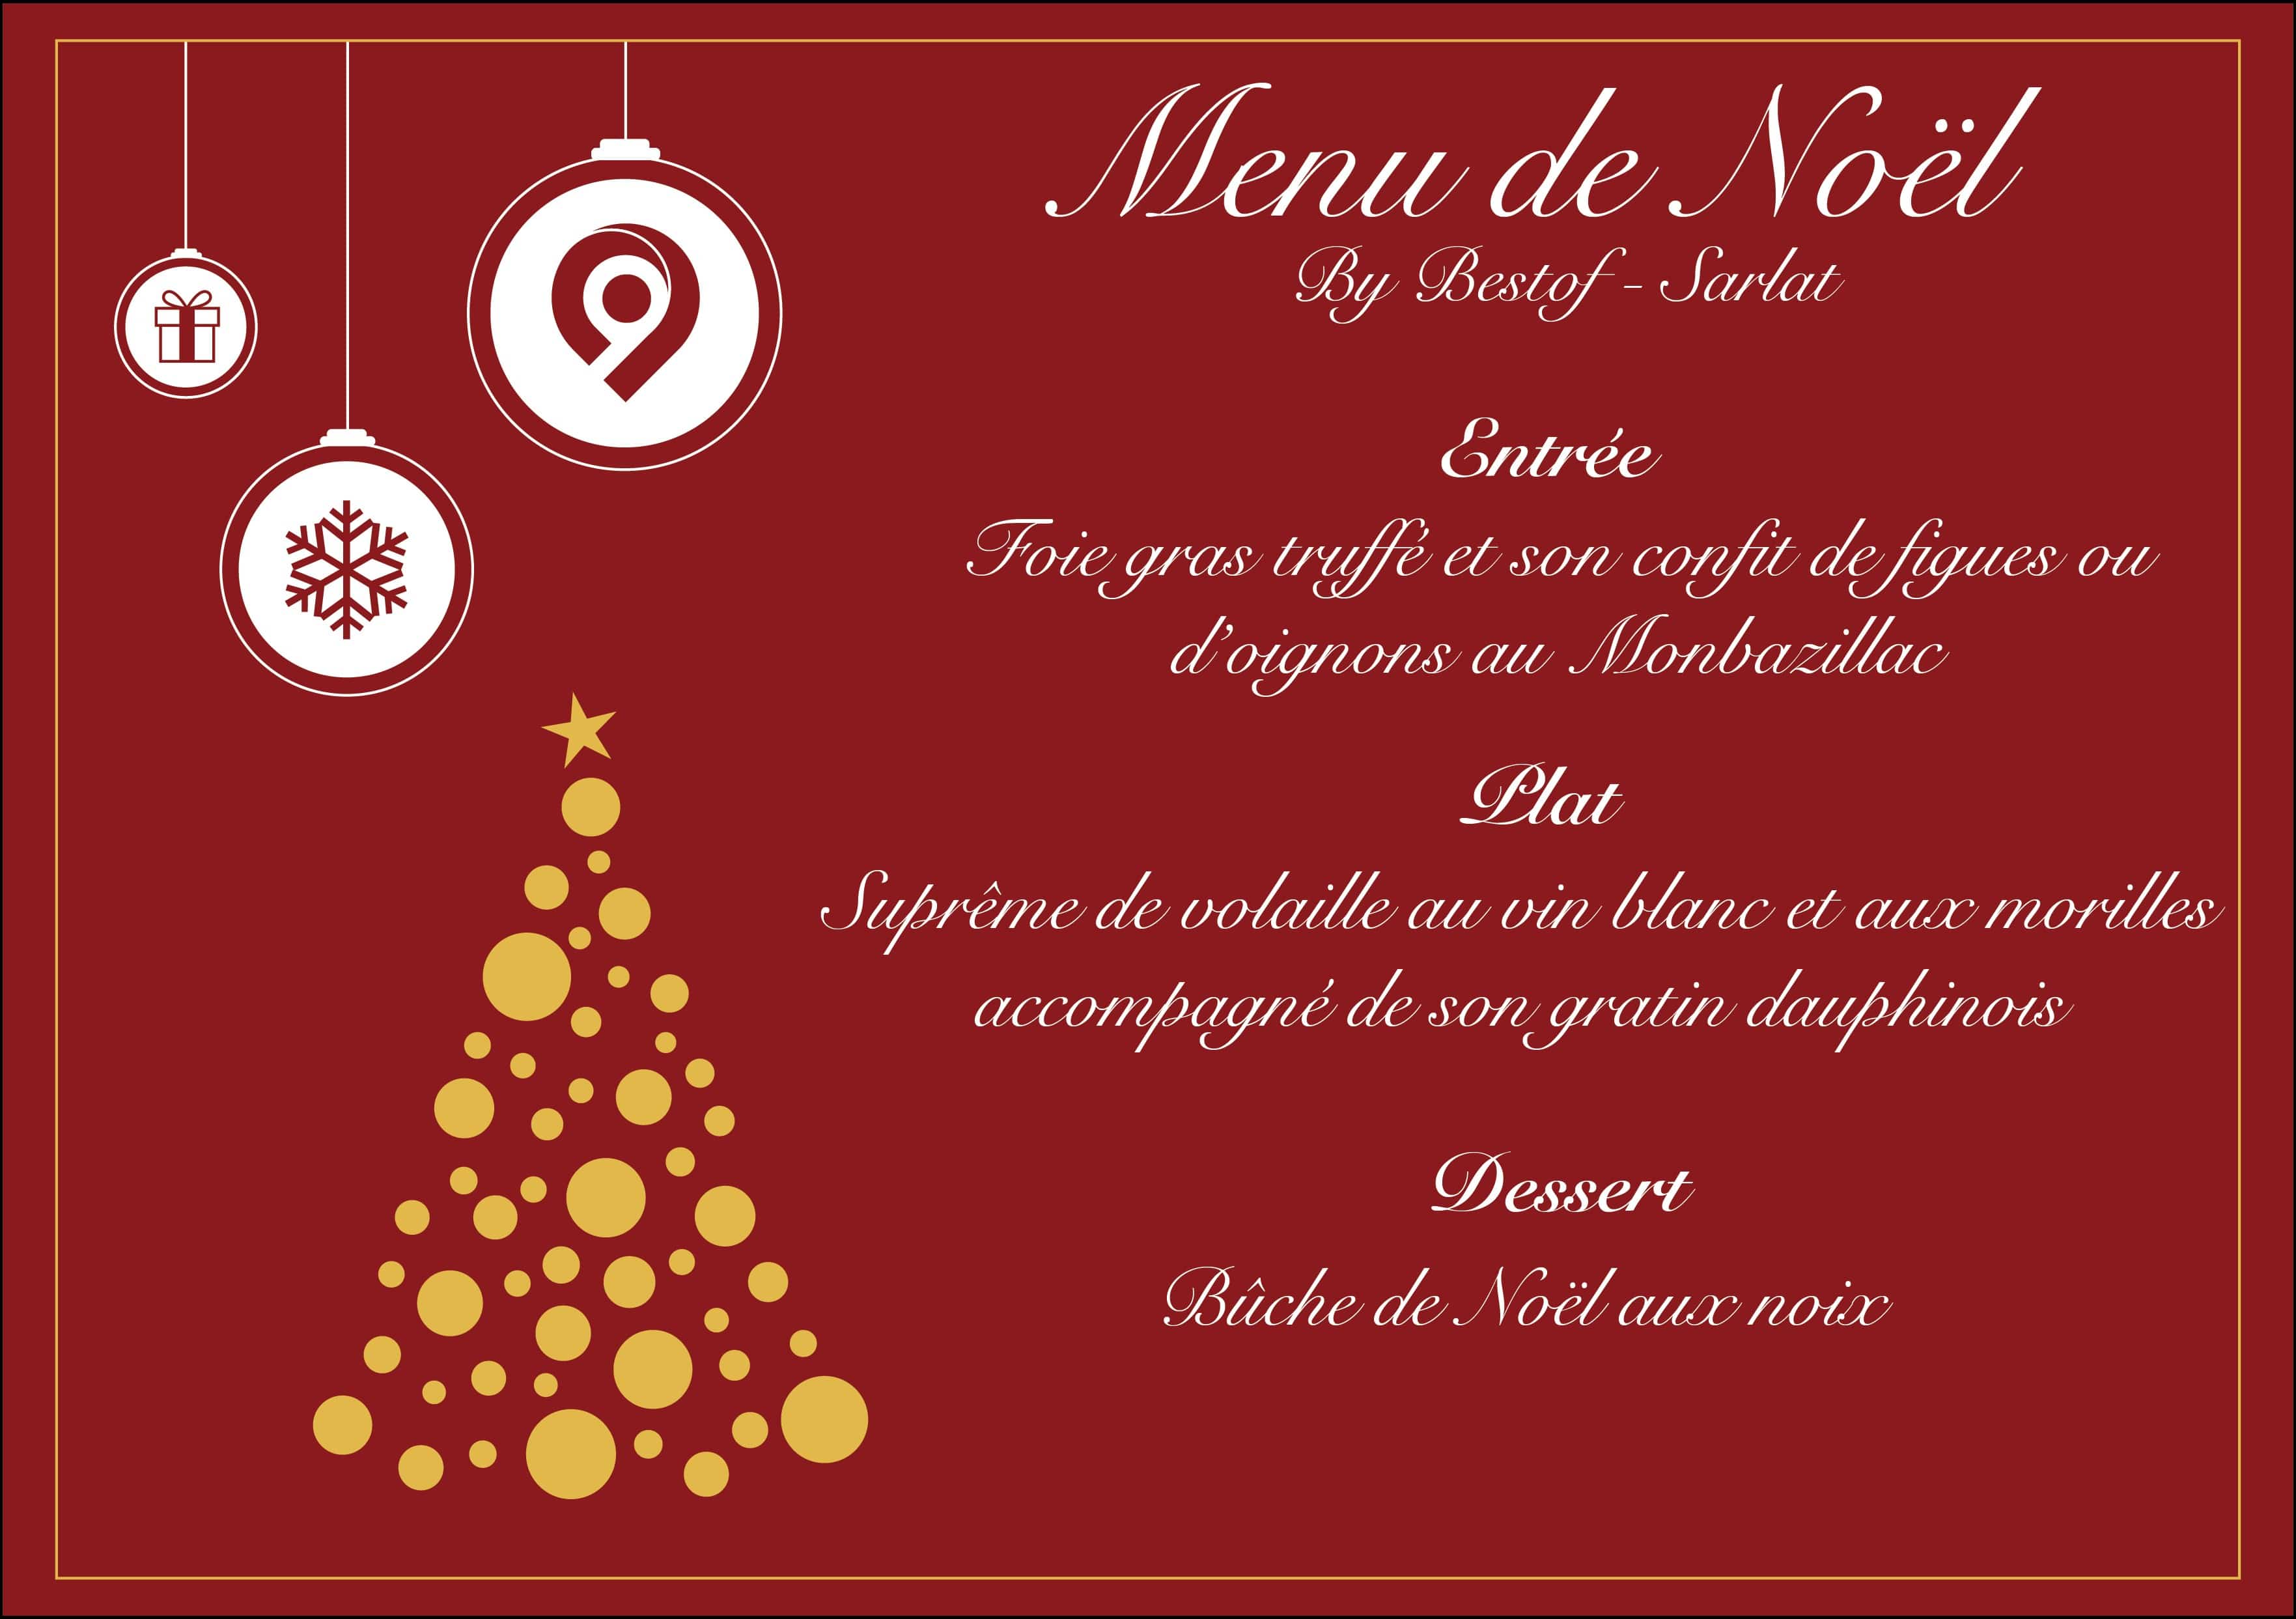 Image Pour Menu De Noel | Decoration de Noel